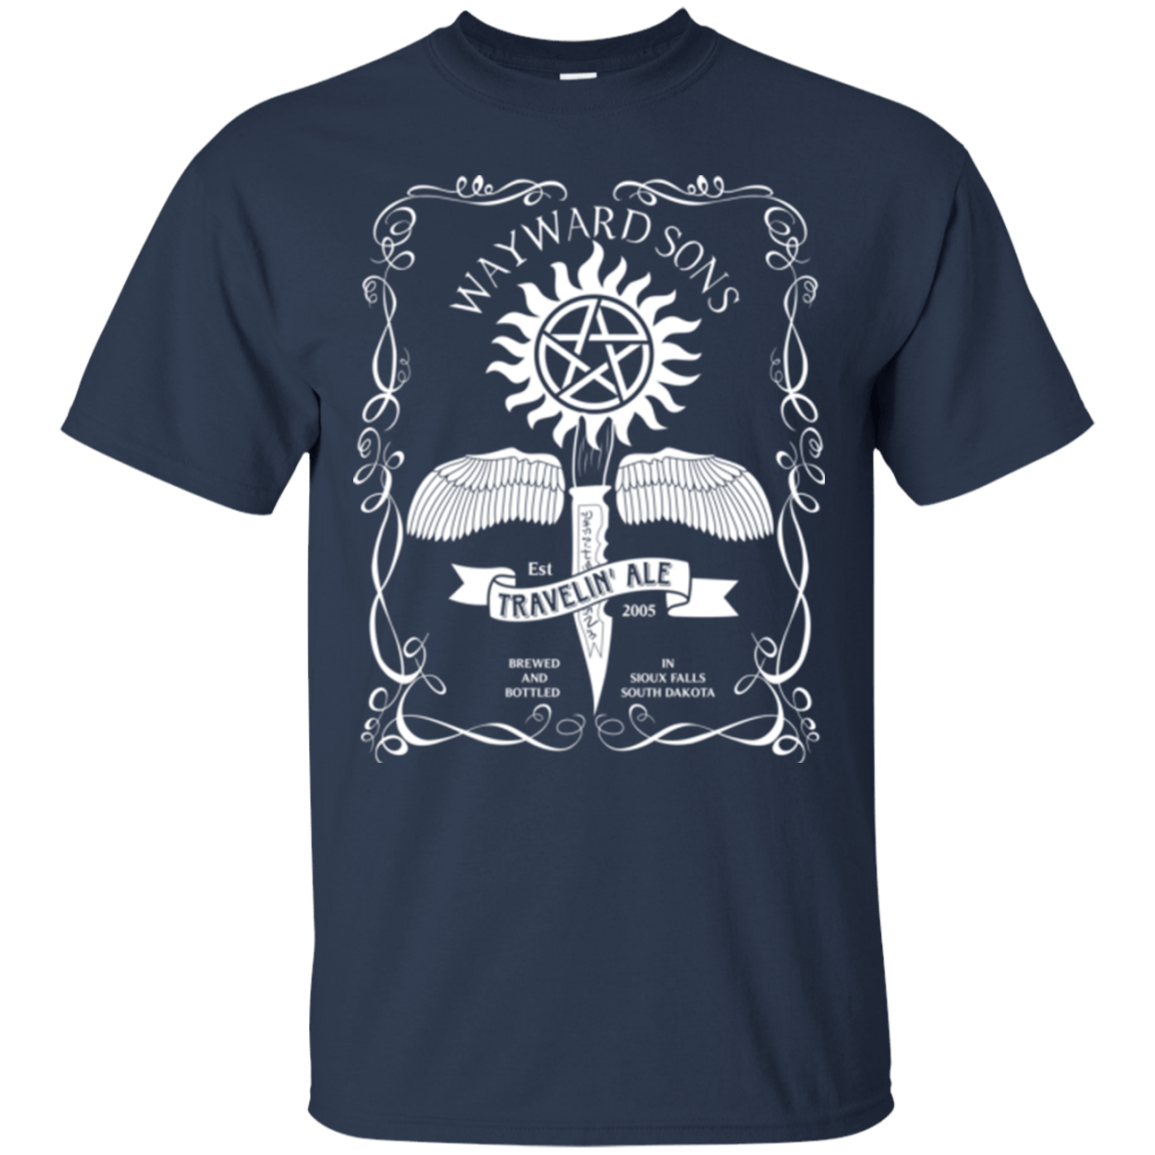 T-Shirts Navy / Small Supernatural 3 T-Shirt